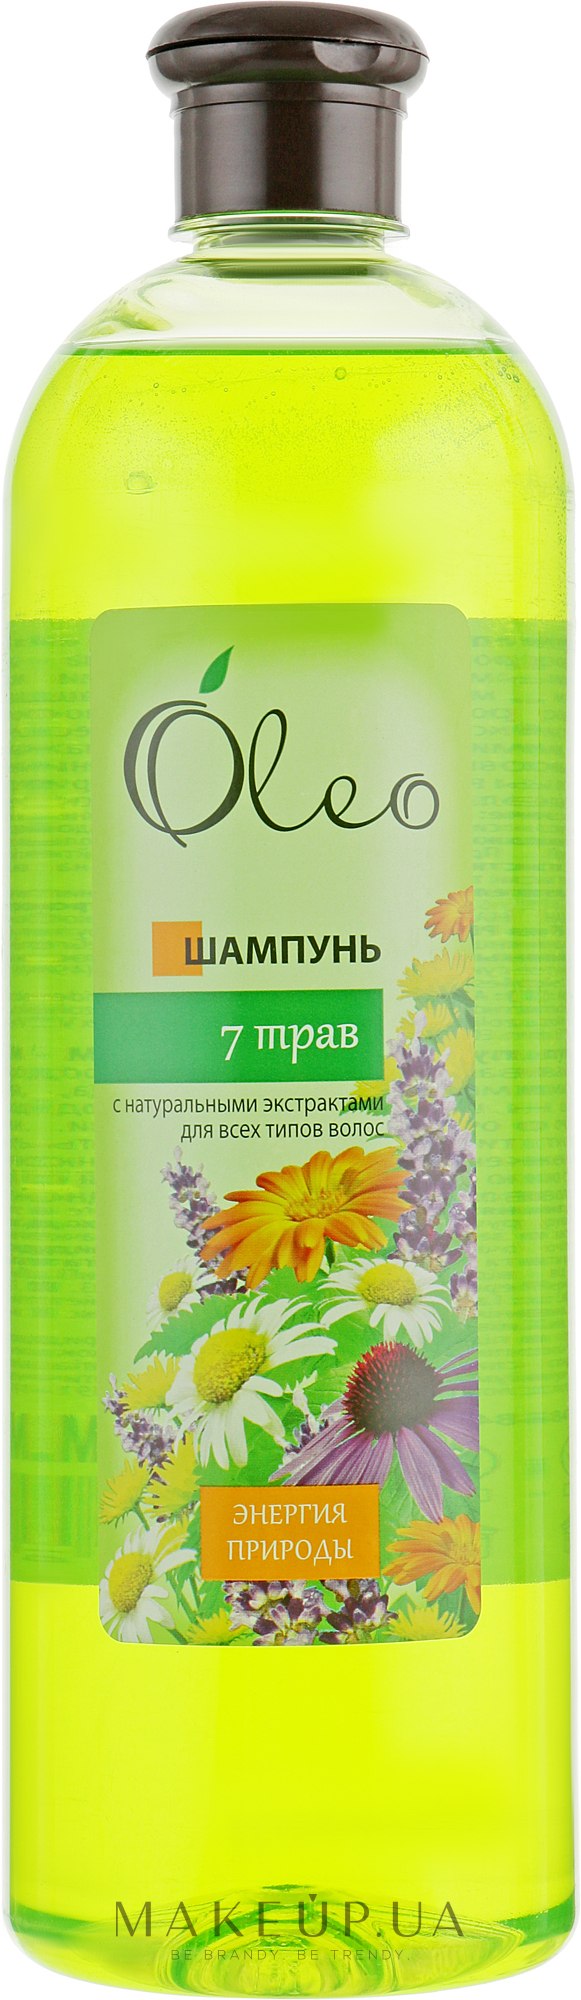 Шампунь для волос "7 трав" - Oleo — фото 1000ml